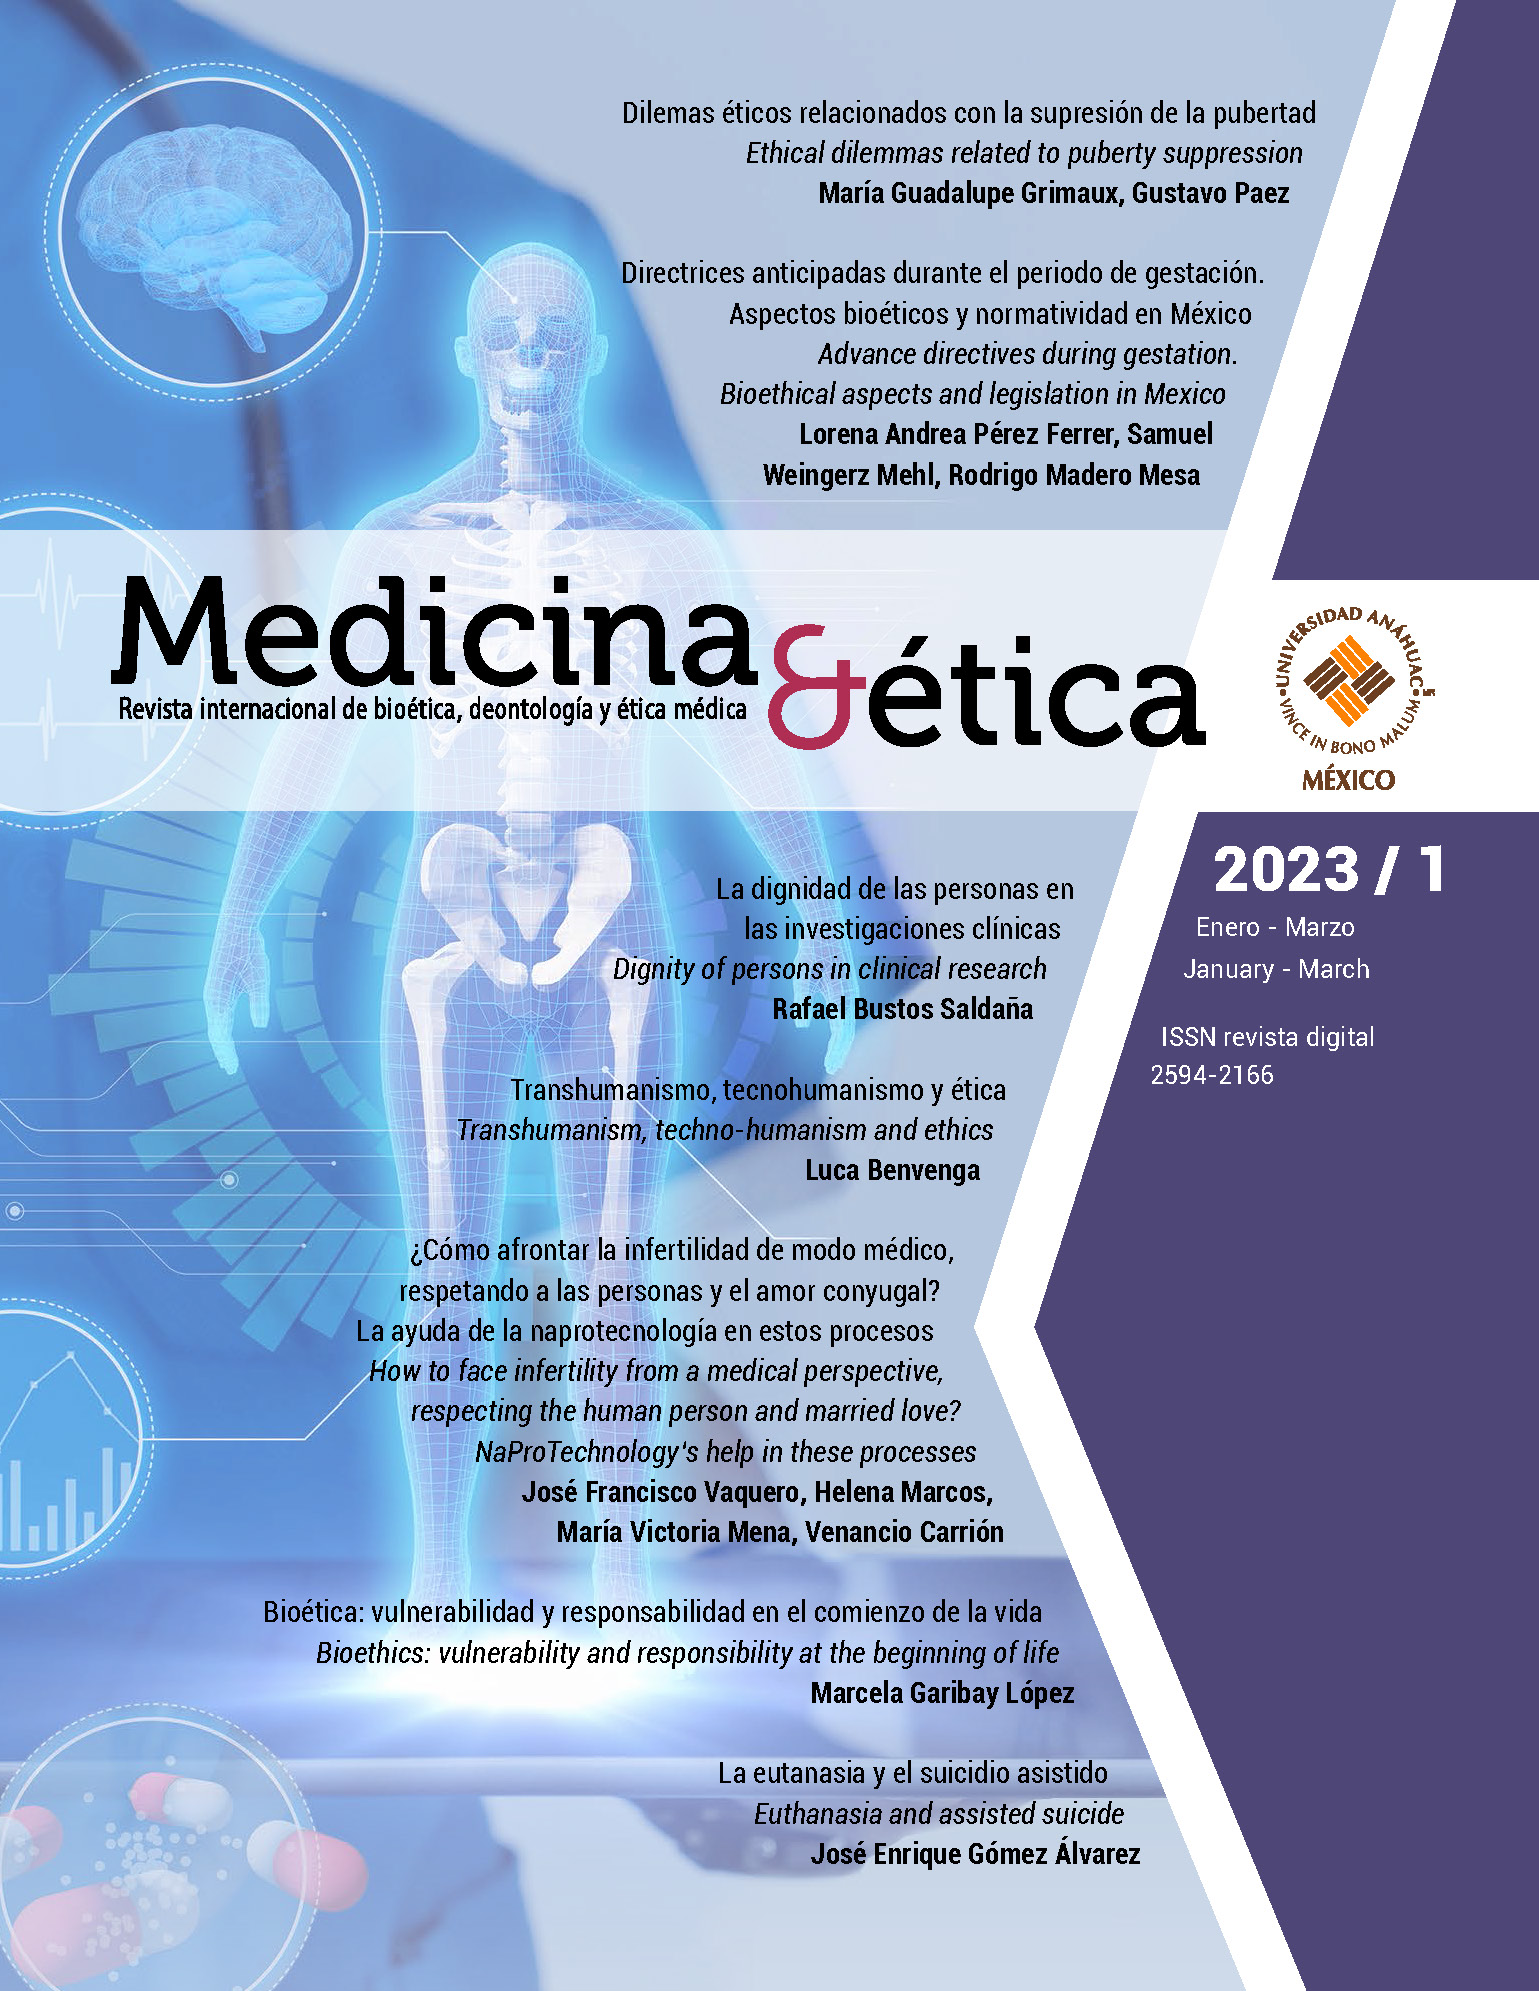 Medicina y Ética es reconocida como una revista de Bioética fundamental